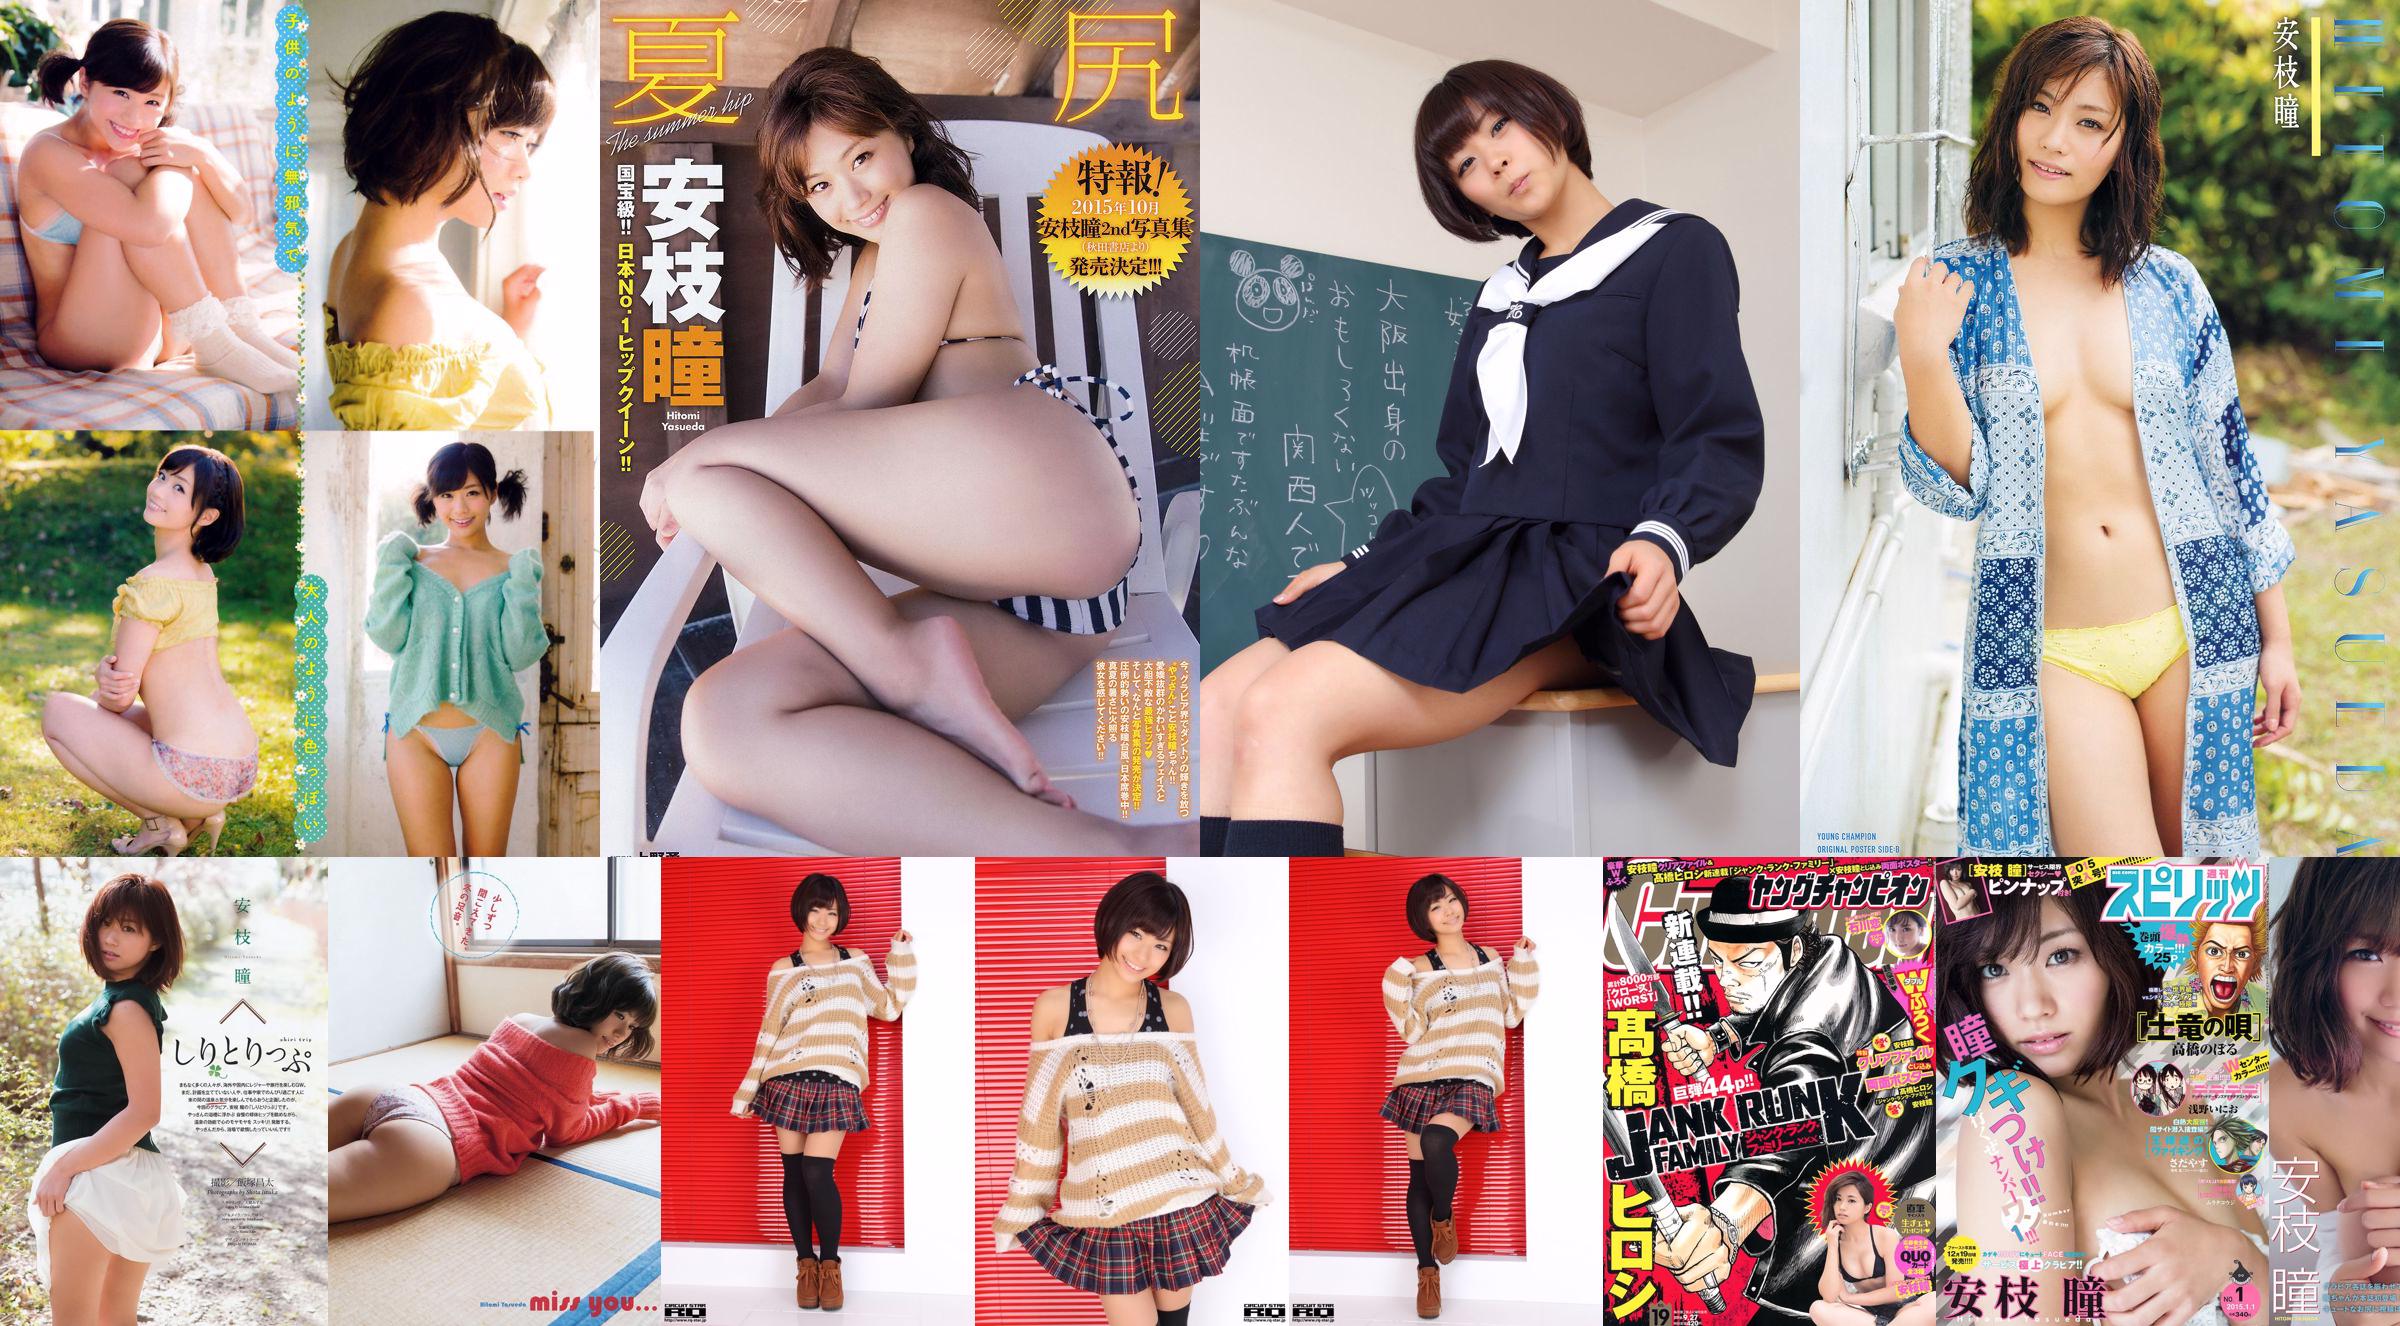 [Jovem campeão] Hitomi Anji e Yukaka Uno 2015 No.18 Photo Magazine No.daa3b7 Página 1